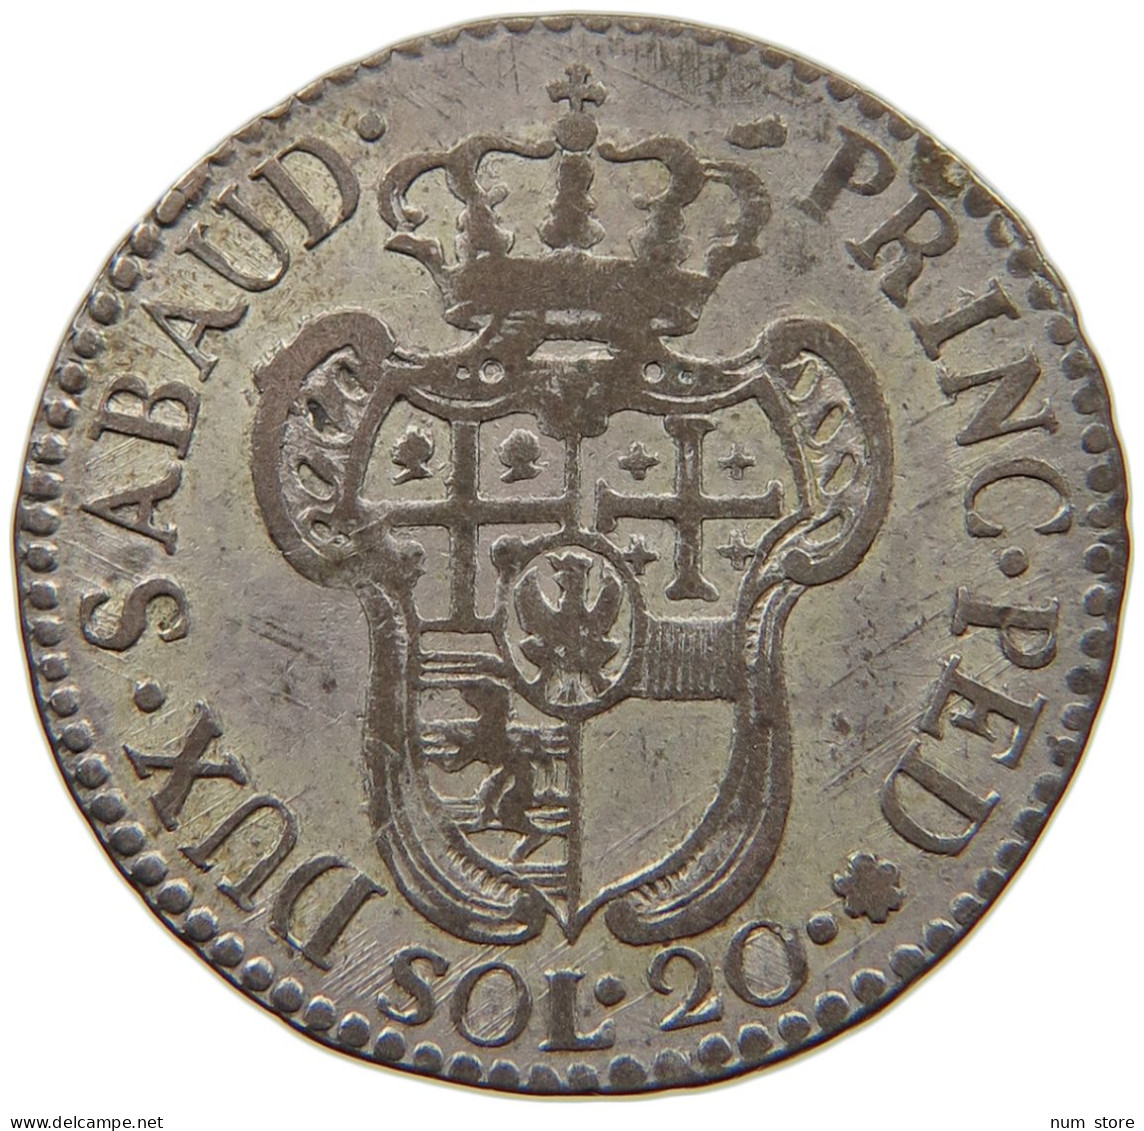 ITALIEN-SARDINIEN 20 SOLDI 1796 VITTORIO AMADEO III., 1773-1796. #MA 008542 - Piamonte-Sardaigne-Savoie Italiana